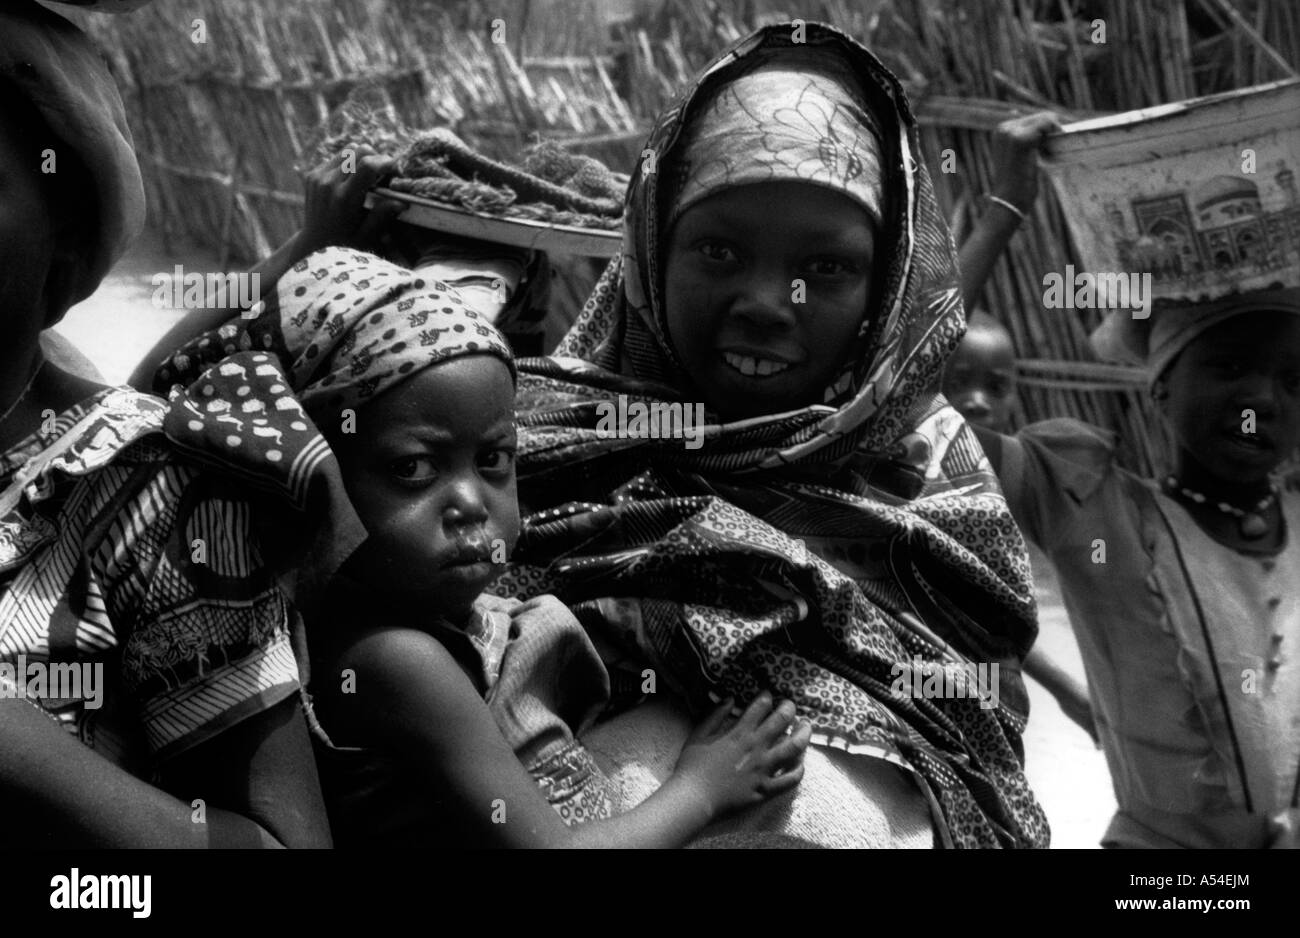 Painet hn2018 706 in bianco e nero bambini bauchi nigeria nazione in via di sviluppo meno sviluppati dal punto di vista economico la cultura Foto Stock